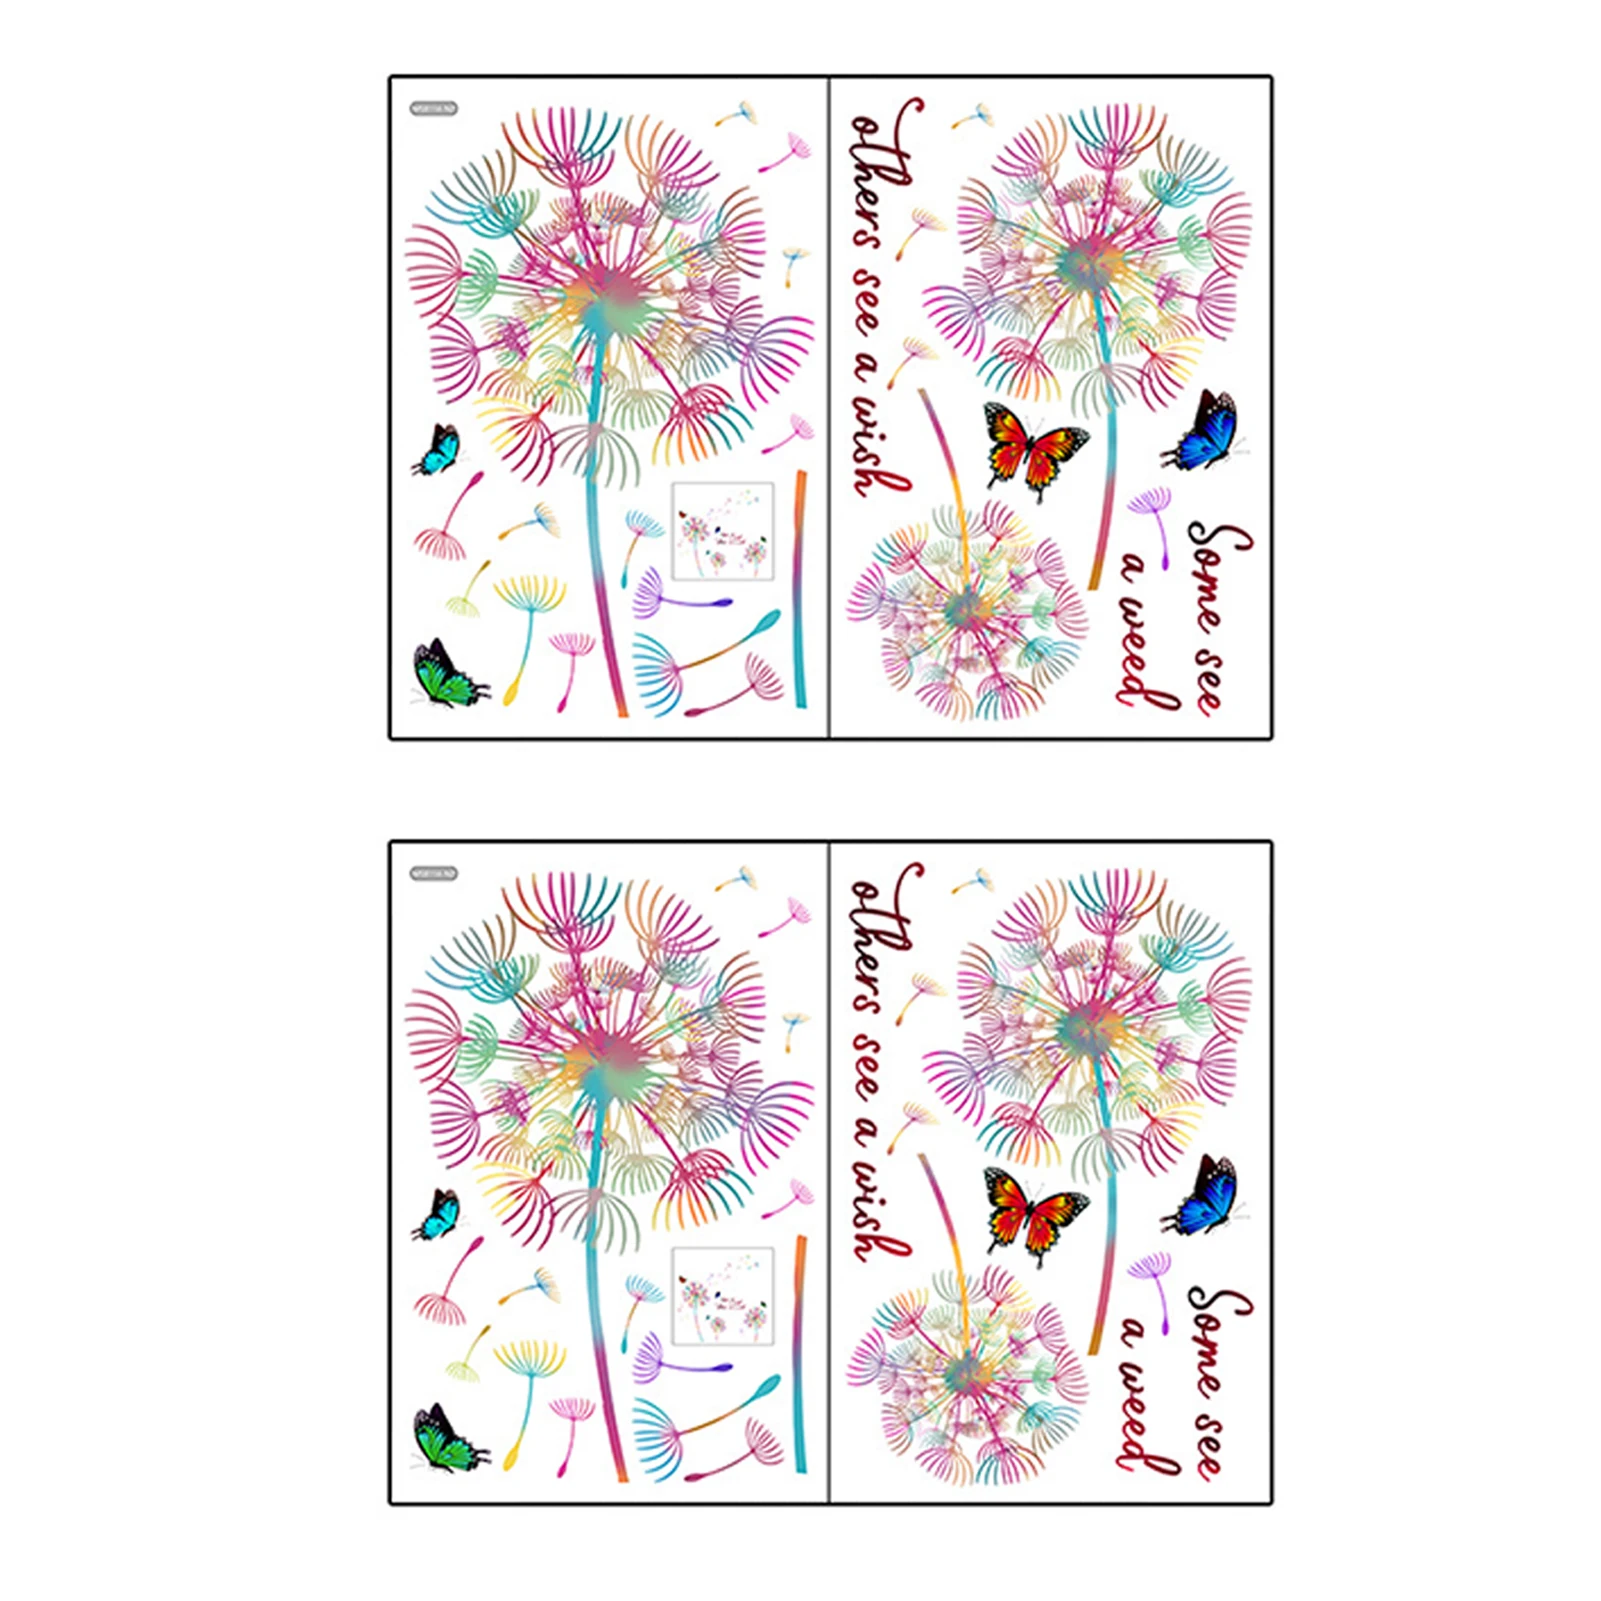 4sheets/2sets עבור חדר ילדים הלוואי ספה רקע צבעוני עיצוב הבית השינה פרפר פרח ילדים עמיד למים קיר מדבקה